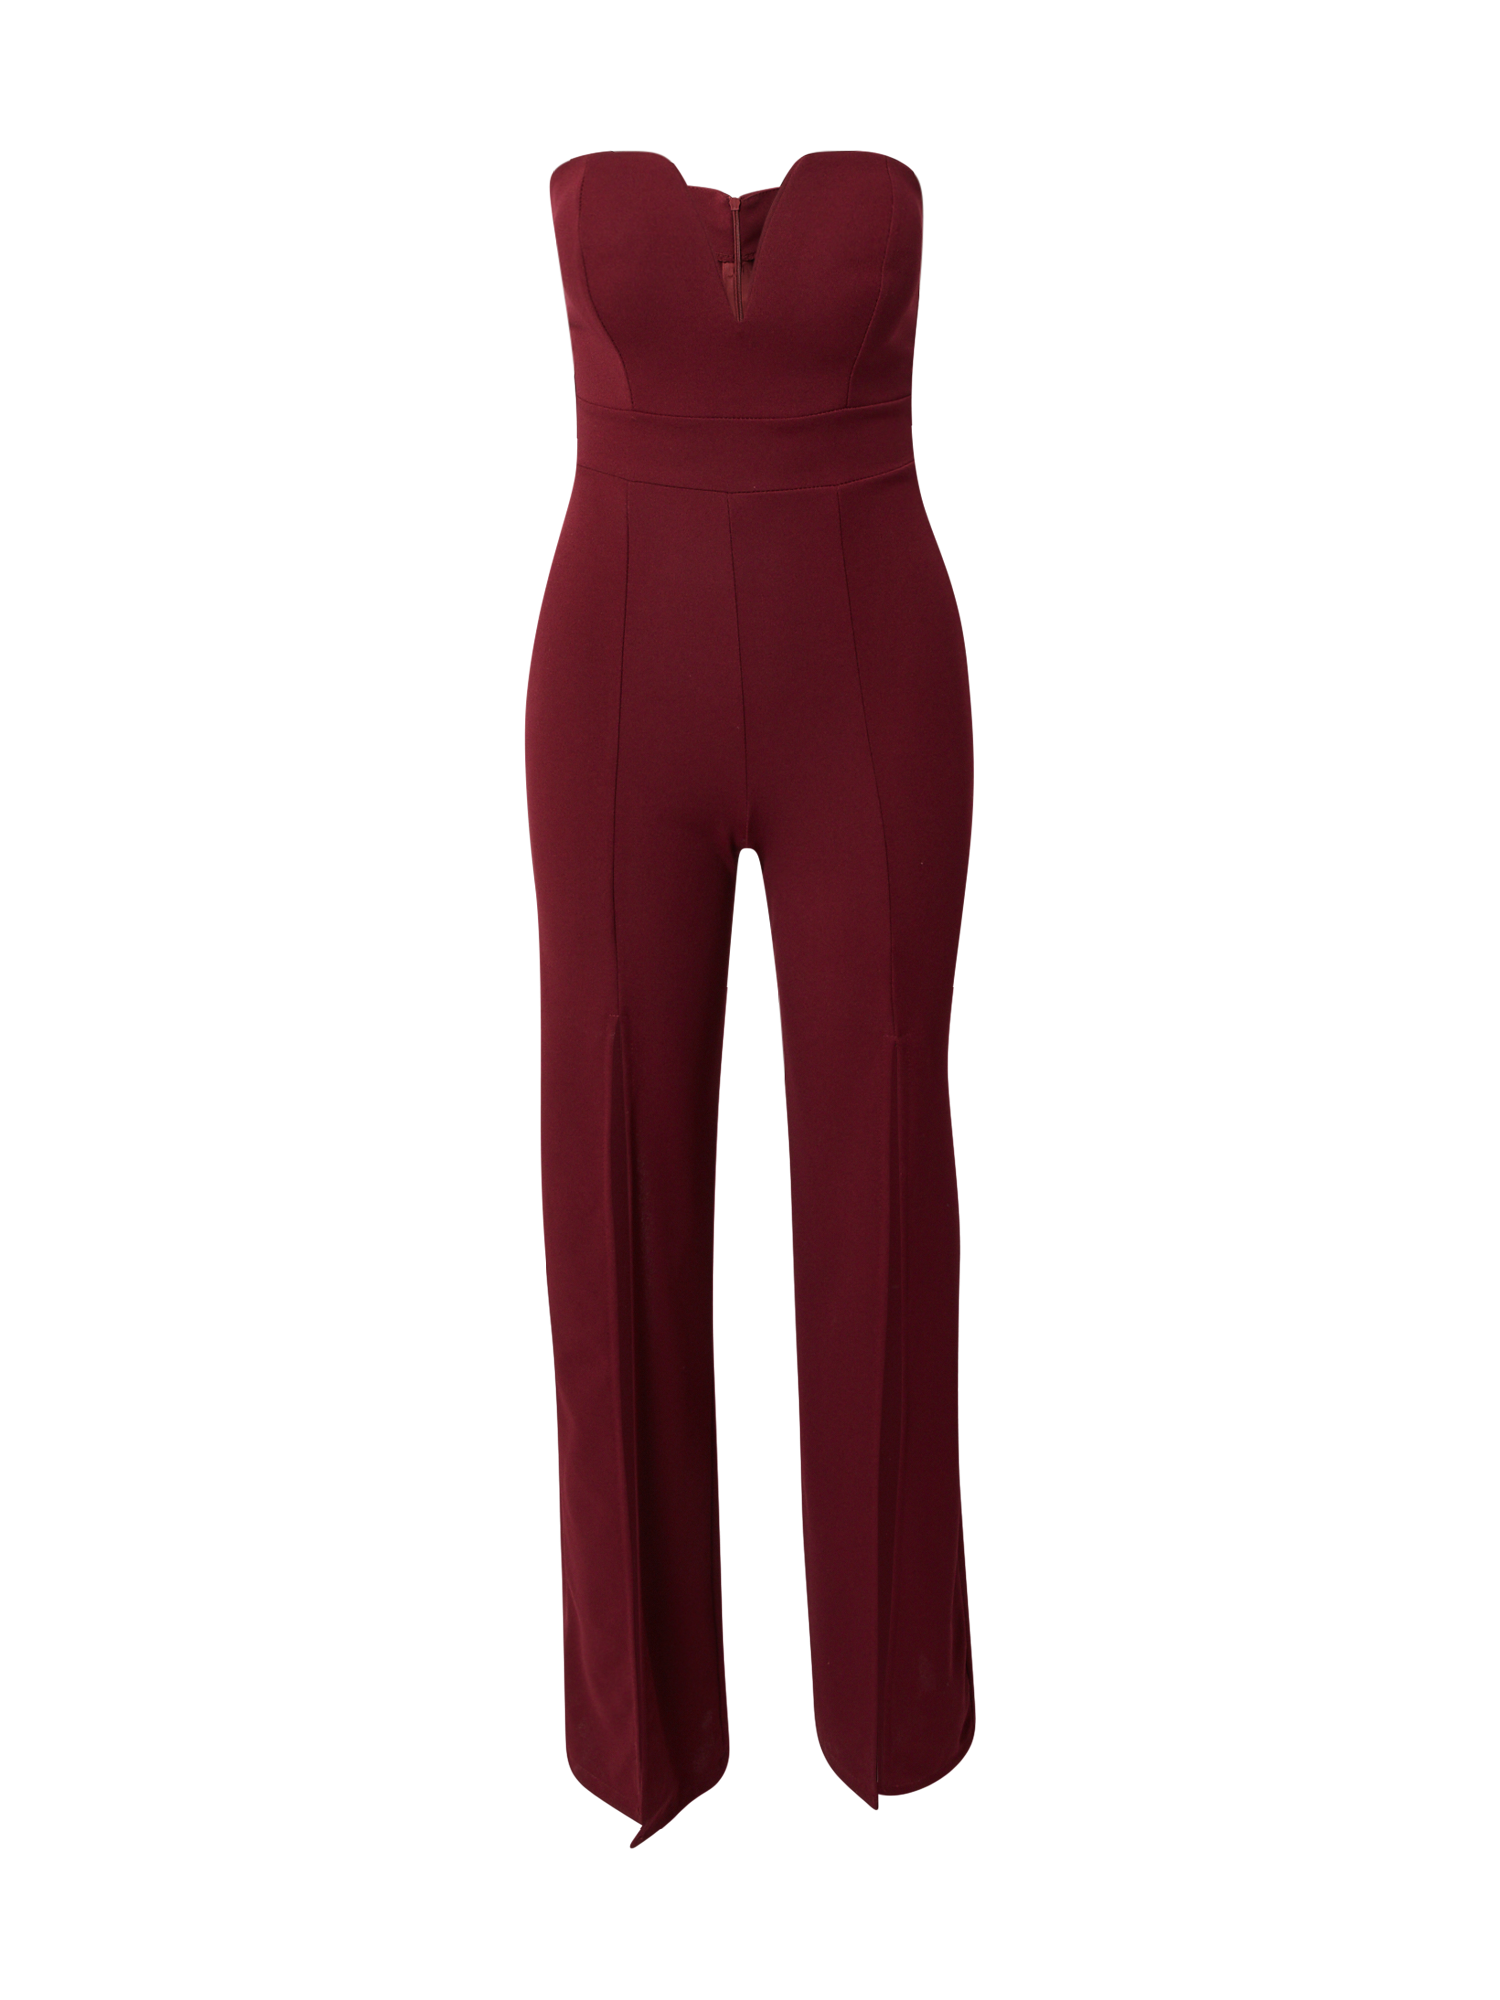 Odzież Kobiety WAL G. Kombinezon LANEY w kolorze Krwistoczerwonym 